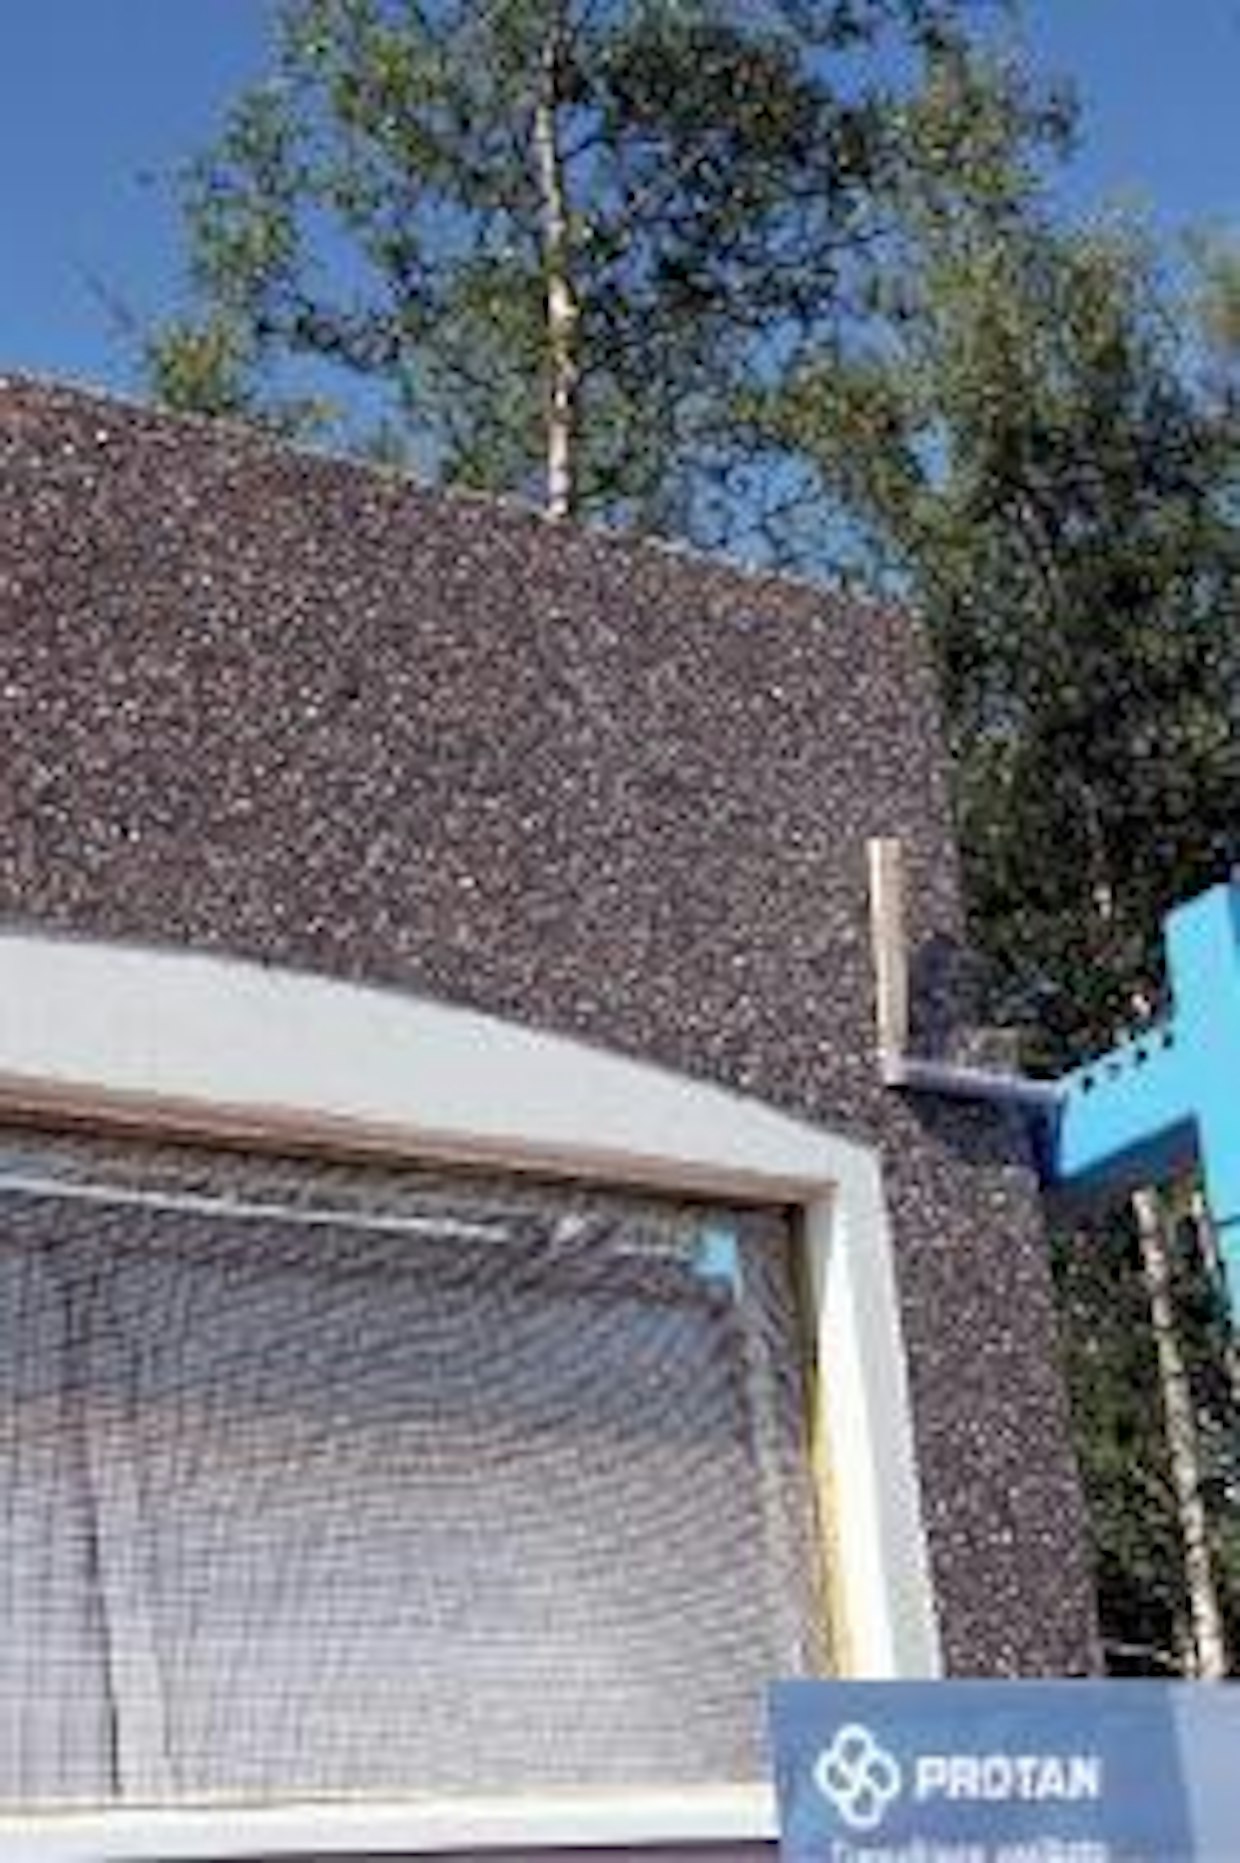 NHK-Keskus on tuonut markkinoille täyskorkean betoniseinäelementin. Kattovasojen väliä ei tarvitse rakentaa erikseen, vaan elementin reunassa on valmis kolo kattovasalle. Kuvassa elementtiin on asennettu jo aiemmin markkinoille tuotu kosteutta navettailmasta poistava itkuikkuna. (MT)